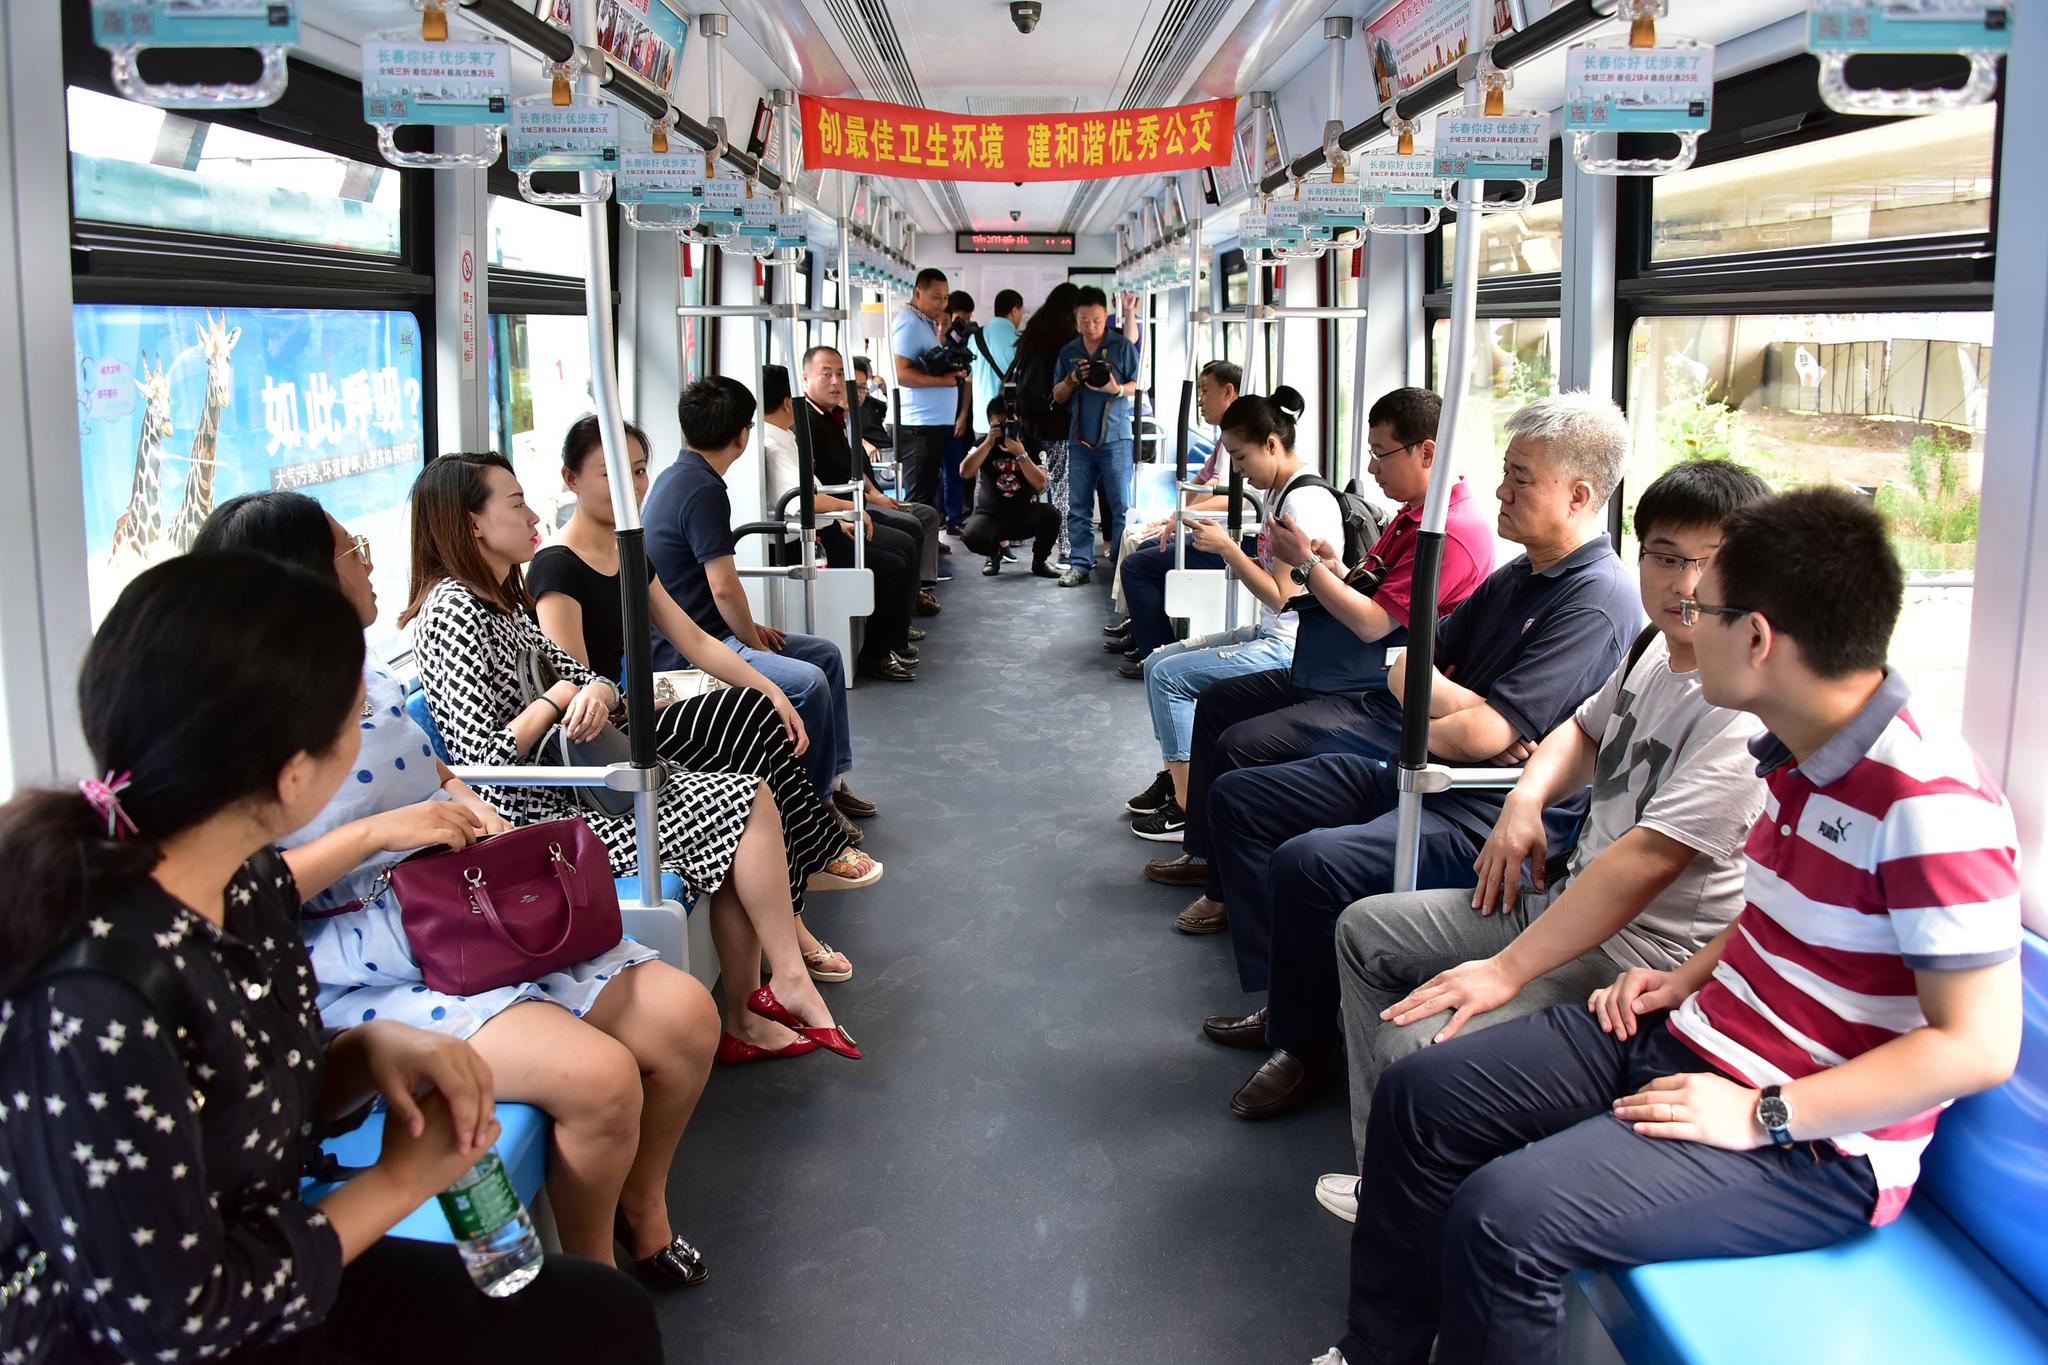 公交车上露出的嫩妹子 [22P] 套图打包下载 成人图片 Qinimg